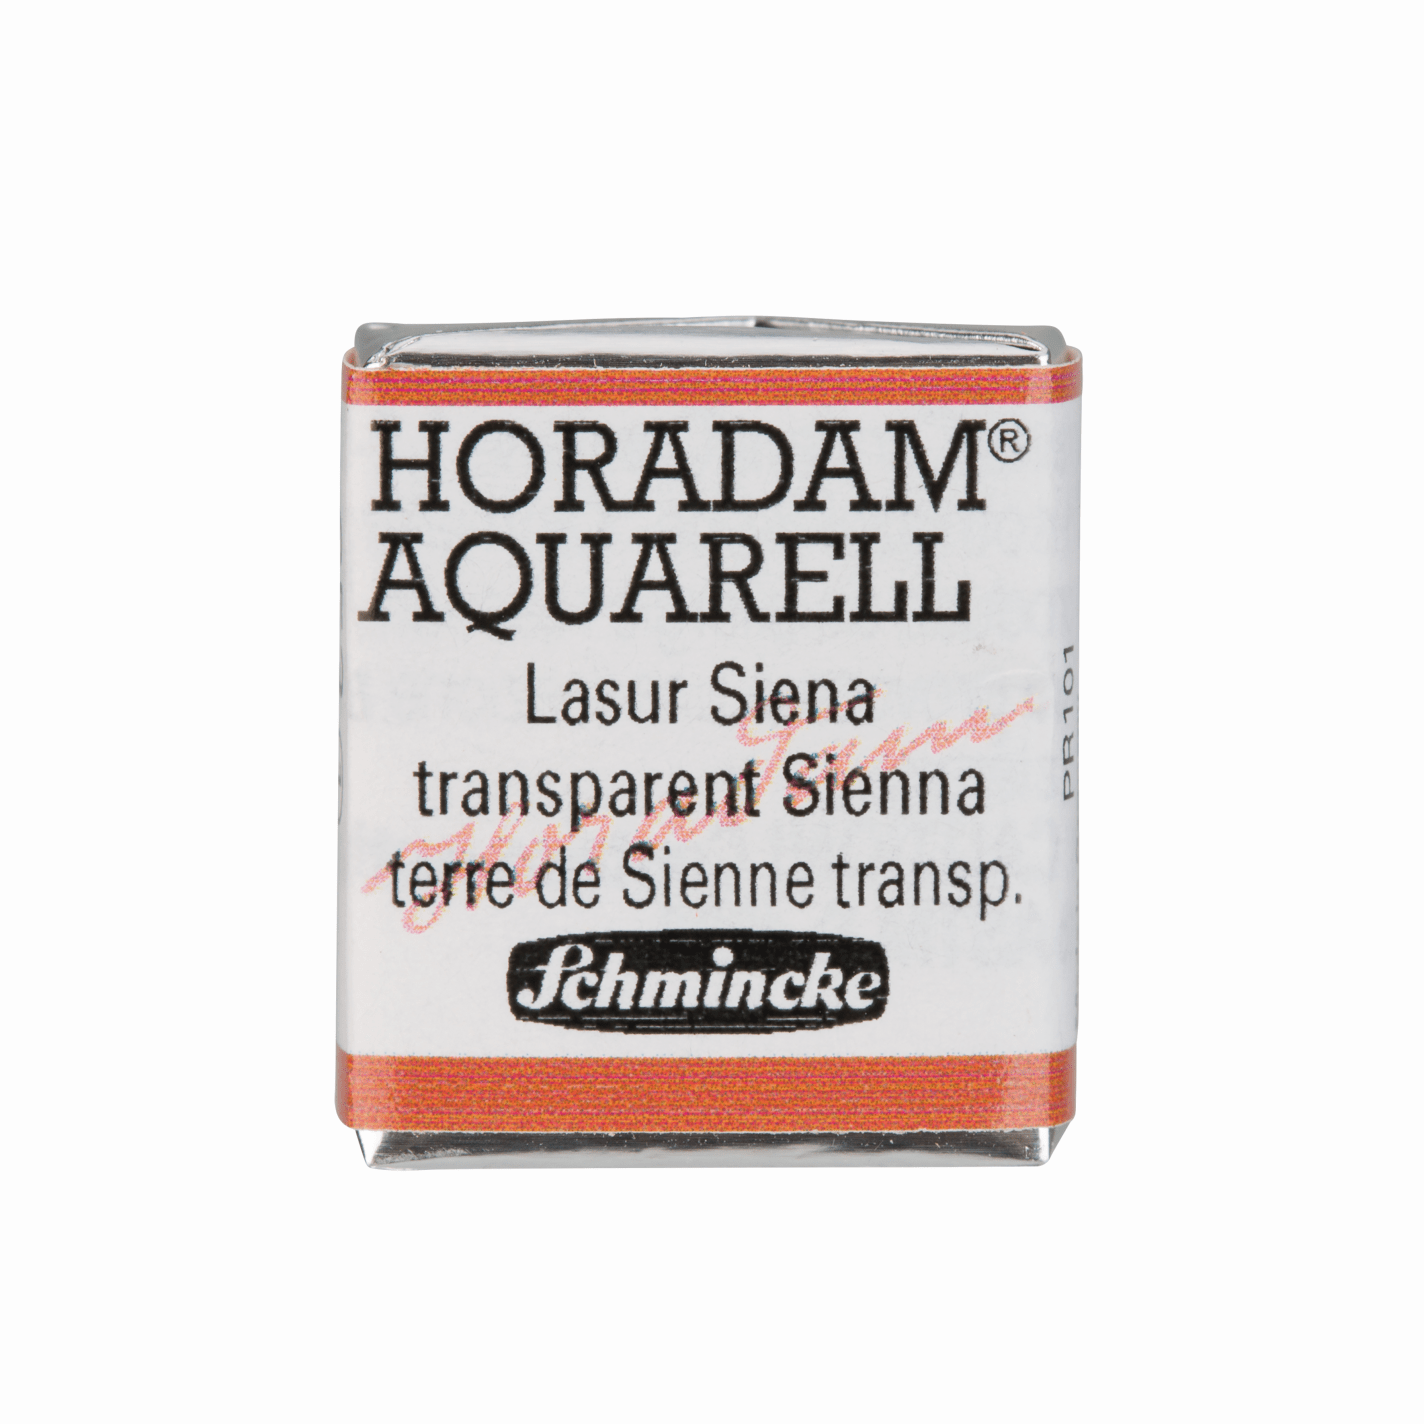 Schmincke Horadam Aquarell pans 1/2 pan Transparent Sienna